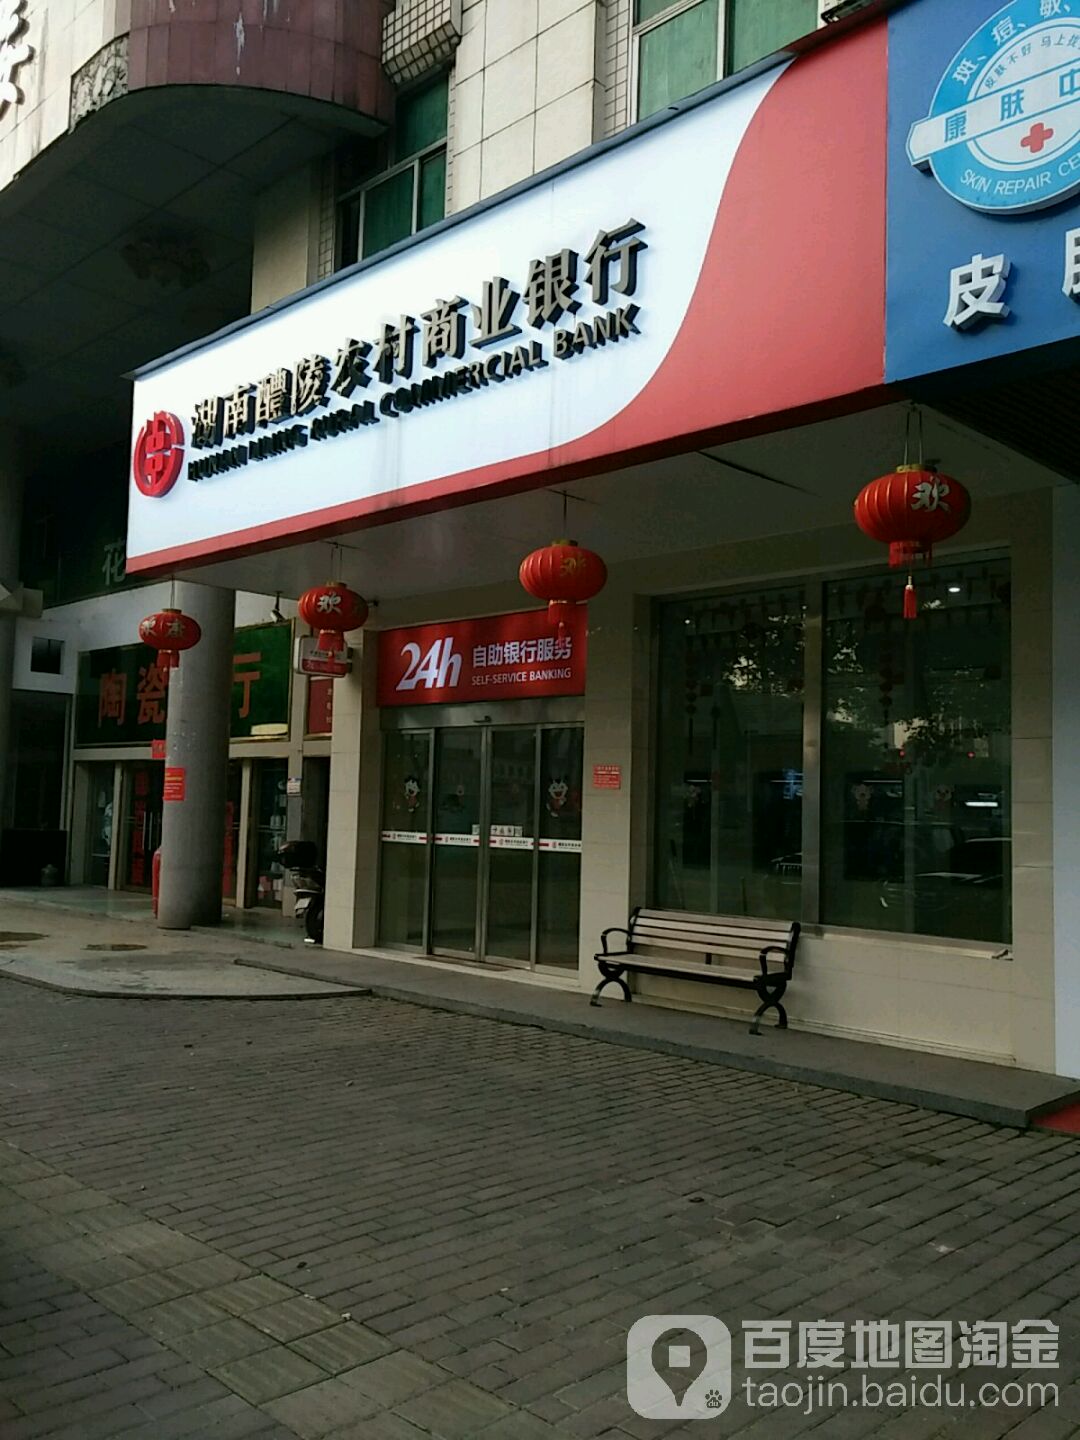 湖南醴陵农村商业银行24小时自助银行